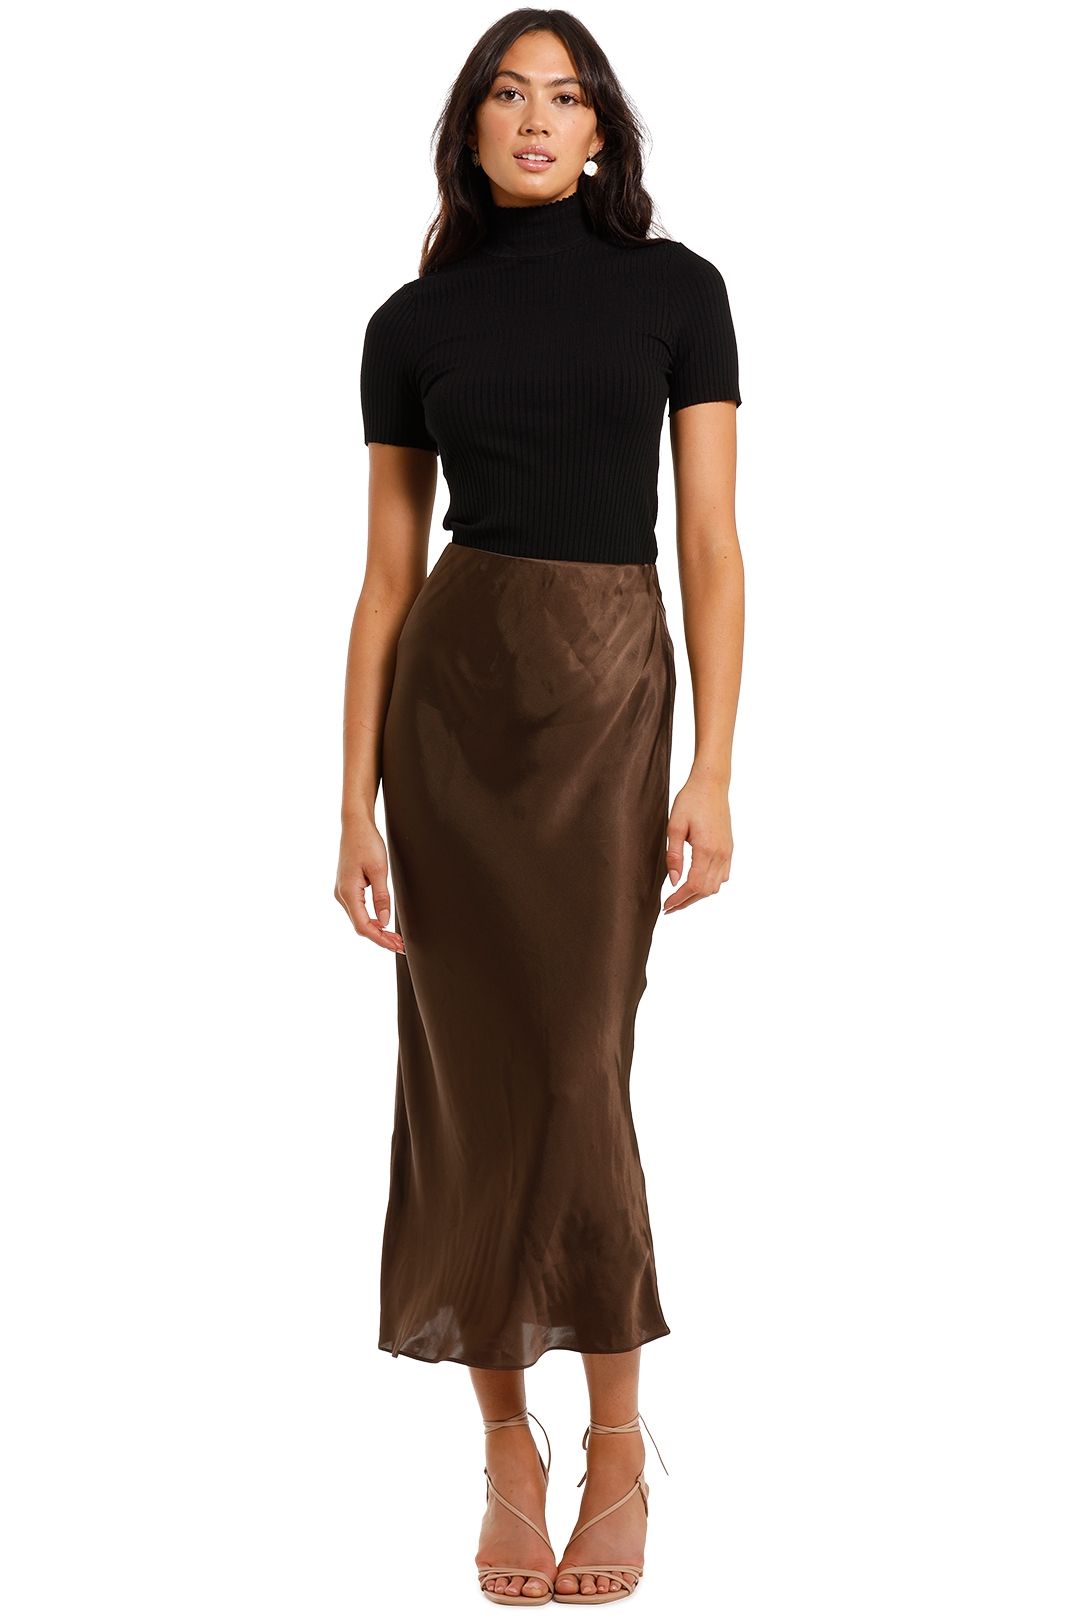 Elka Collective Versailles Skirt Brown